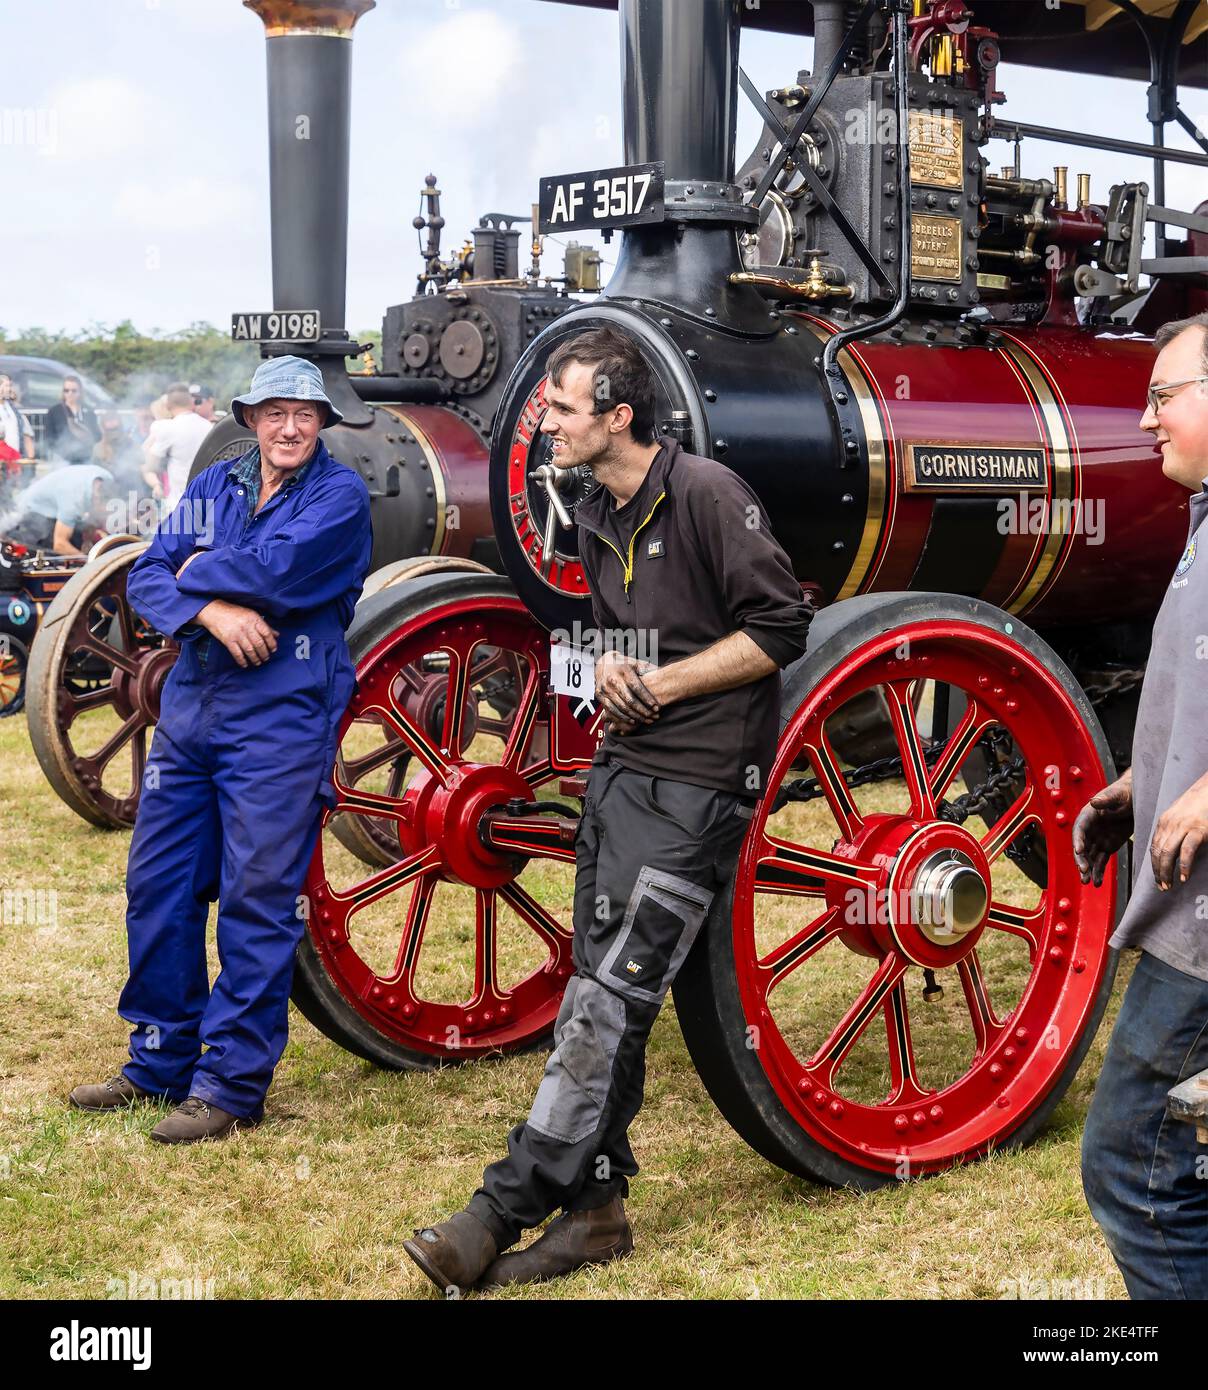 Rallye Great Steam Engine à l'ouest de l'Angleterre. Modèles et roues à vapeur pleine grandeur et moteurs de traction exposés Banque D'Images